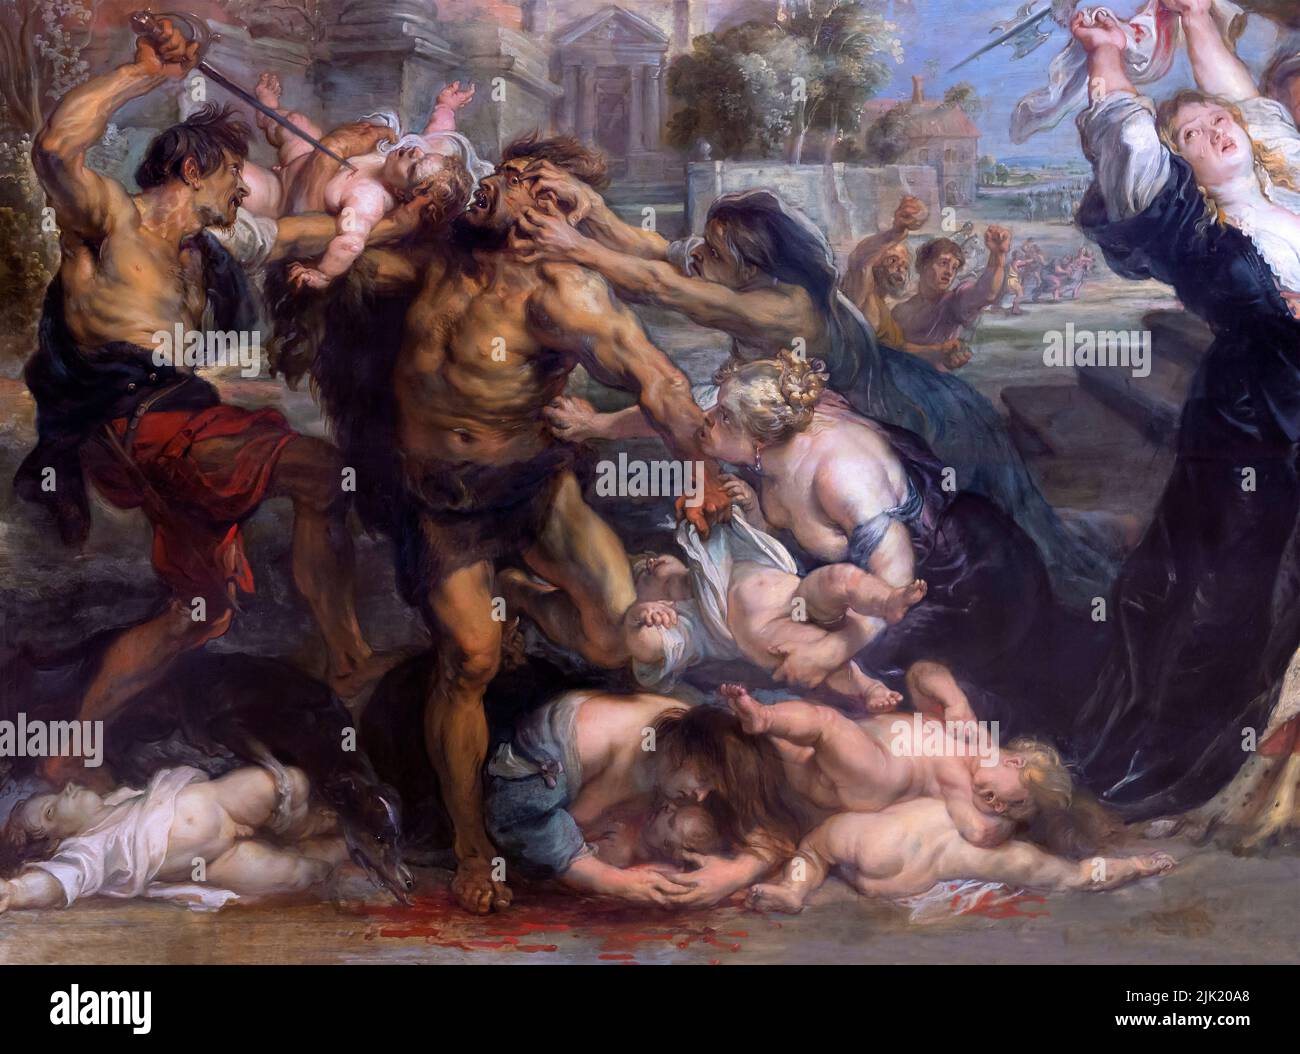 Le massacre des innocents, Peter Paul Rubens, détail, 1638, Alte Pinakothek, Munich, Allemagne, Europe Banque D'Images